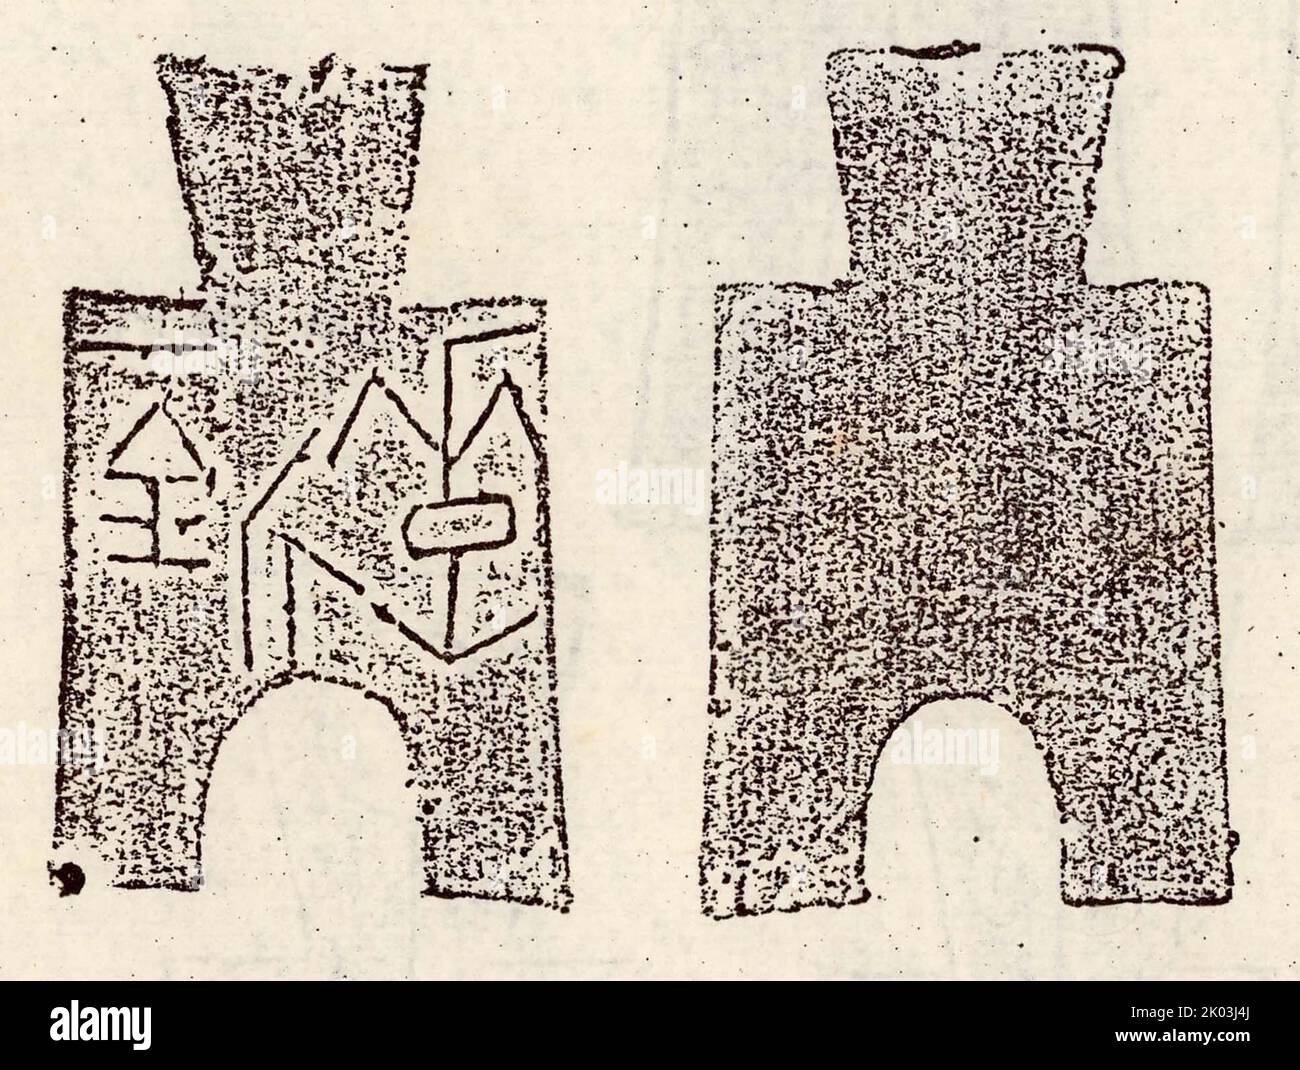 La somme d'argent à la pelle (pinyin: bu bi) était une forme précoce de monnaie de monnaie et de marchandise utilisée pendant la dynastie Zhou de Chine (1045 à 256 avant J.-C.). La bêche-monnaie a été formée comme une bêche ou un outil de désherbage, mais la fine lame et les petites tailles de la bêche-monnaie indiquent qu'elle n'avait pas de fonction utilitaire. Des inscriptions ont été ajoutées aux pièces de la bêche pour marquer leurs dénominations. Plusieurs versions de la bêche monnaie circulaient à travers les plaines centrales chinoises pendant la période de la dynastie Zhou jusqu'à ce qu'elles soient abolies par la dynastie Qin en 221 av. J.-C. en faveur des pièces de monnaie de Ban Liang. Banque D'Images